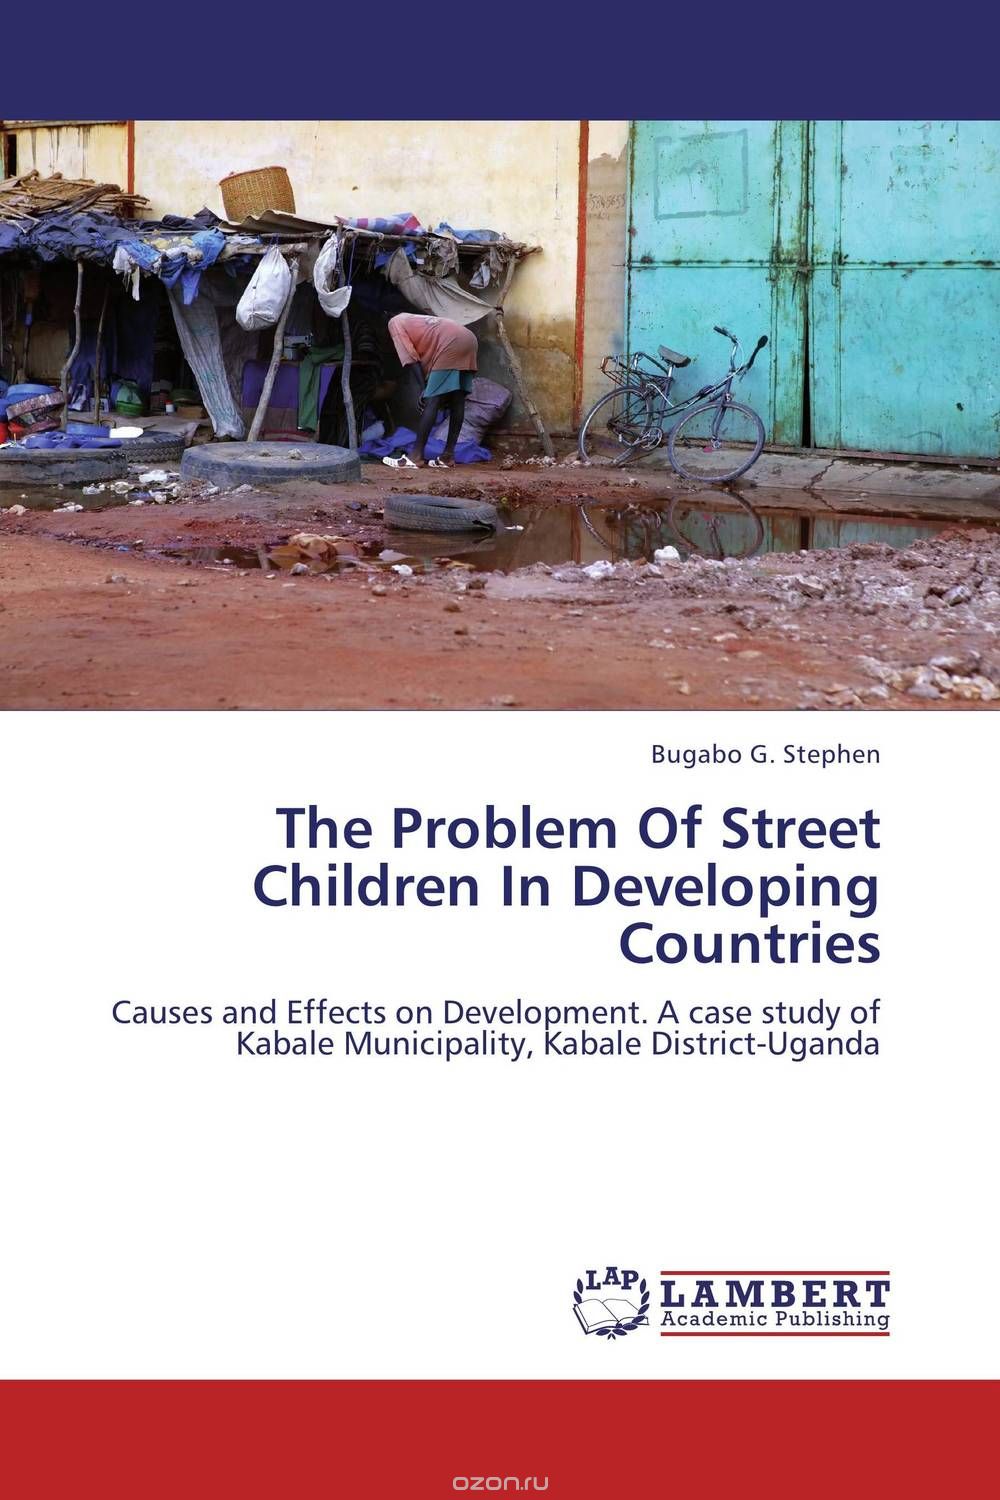 Скачать книгу "The Problem Of Street Children In Developing Countries"